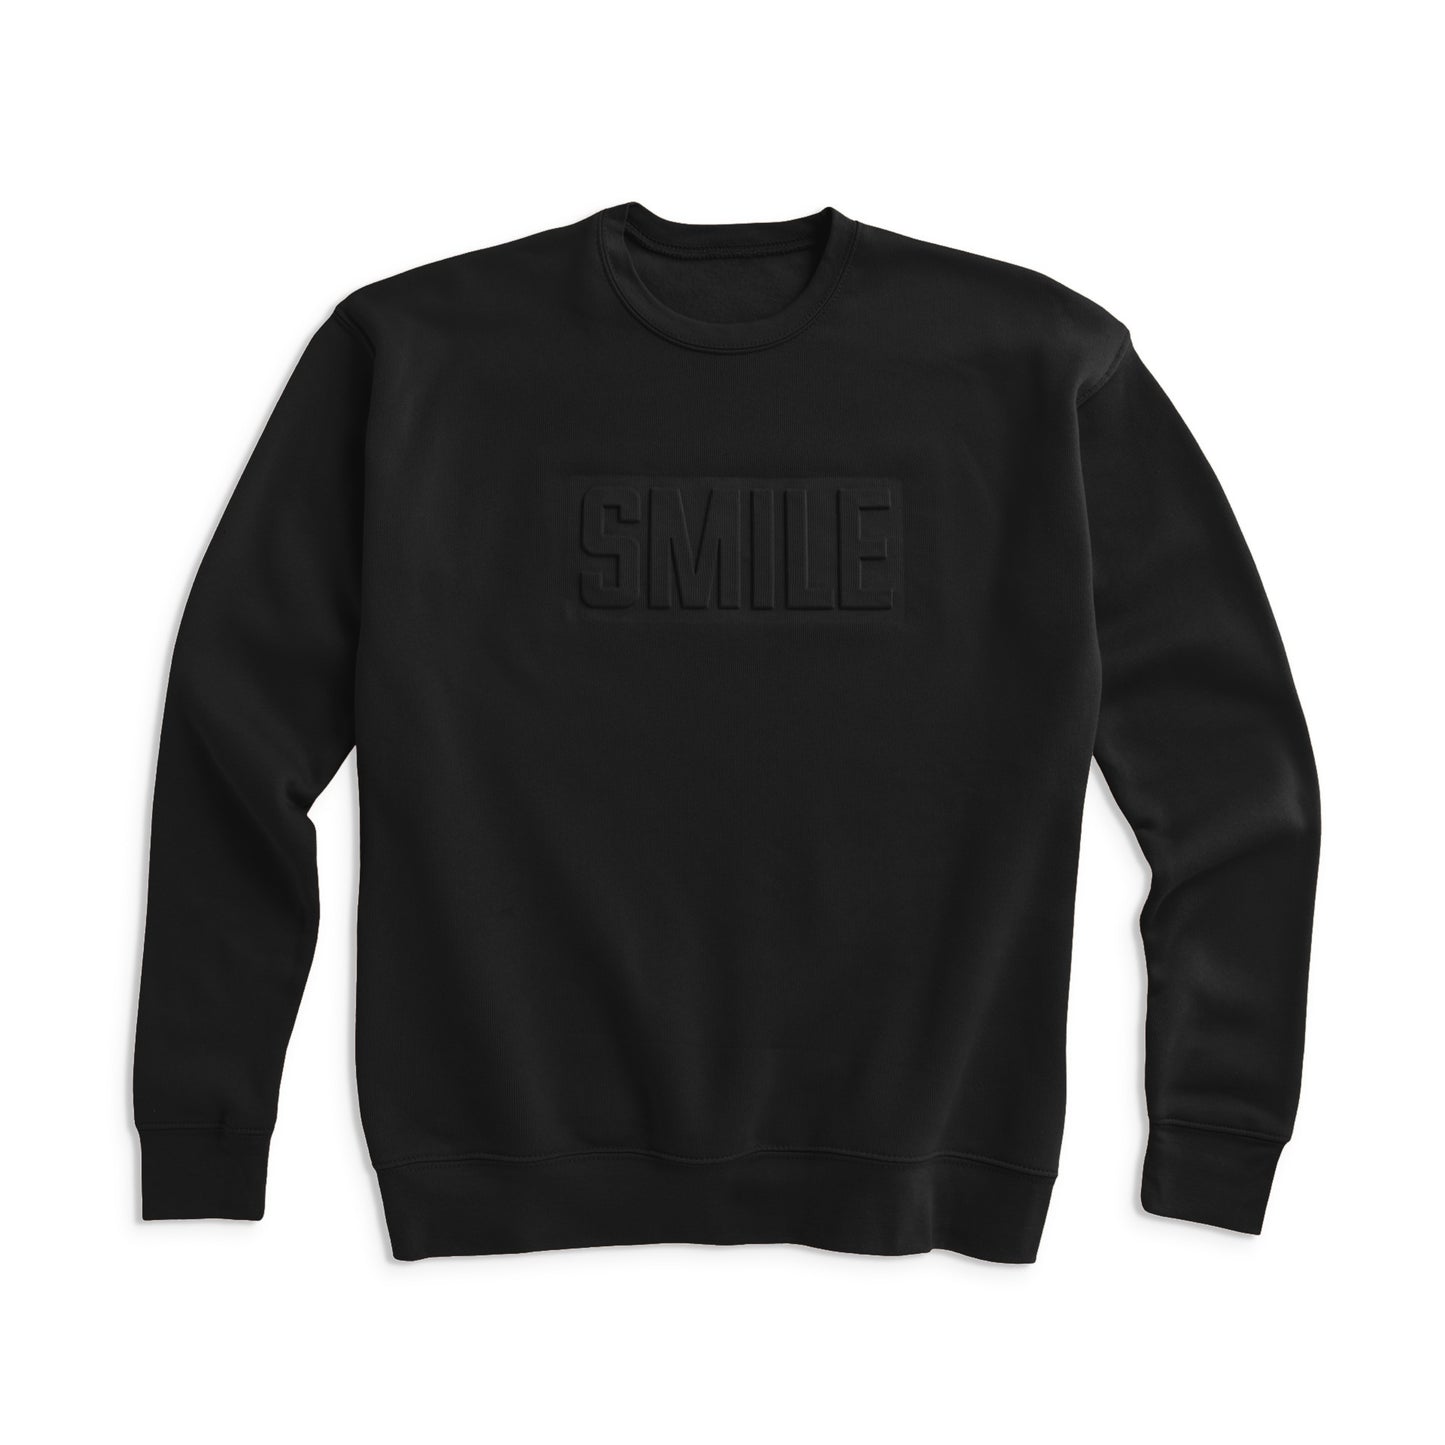 Black SMILE raised logo sweatshirt